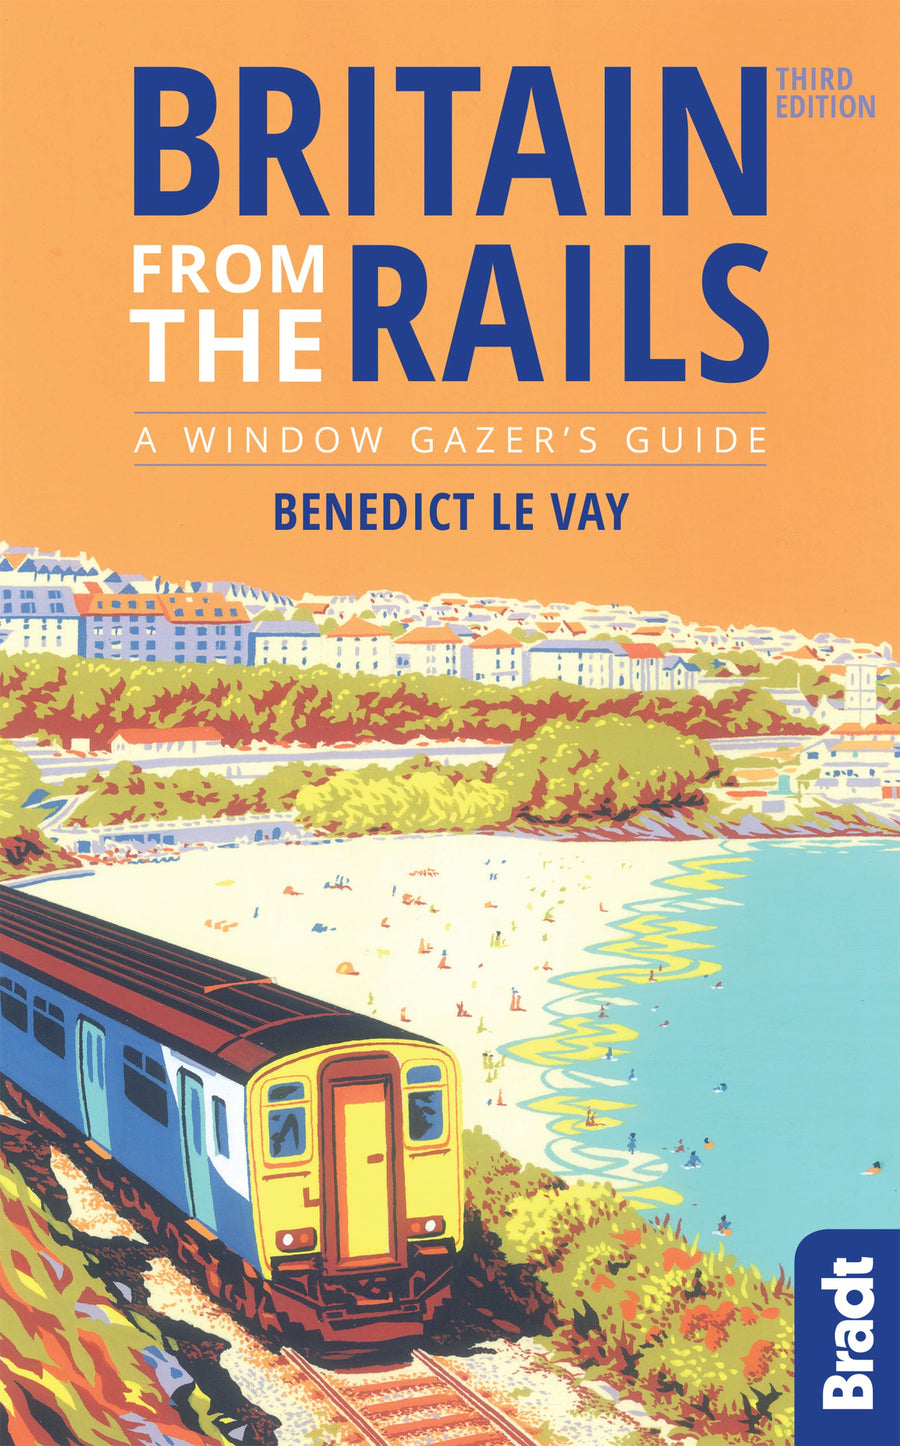 Guide de voyage (en anglais) - Britain from the rails a window gazer's guide | Bradt guide de voyage Bradt 